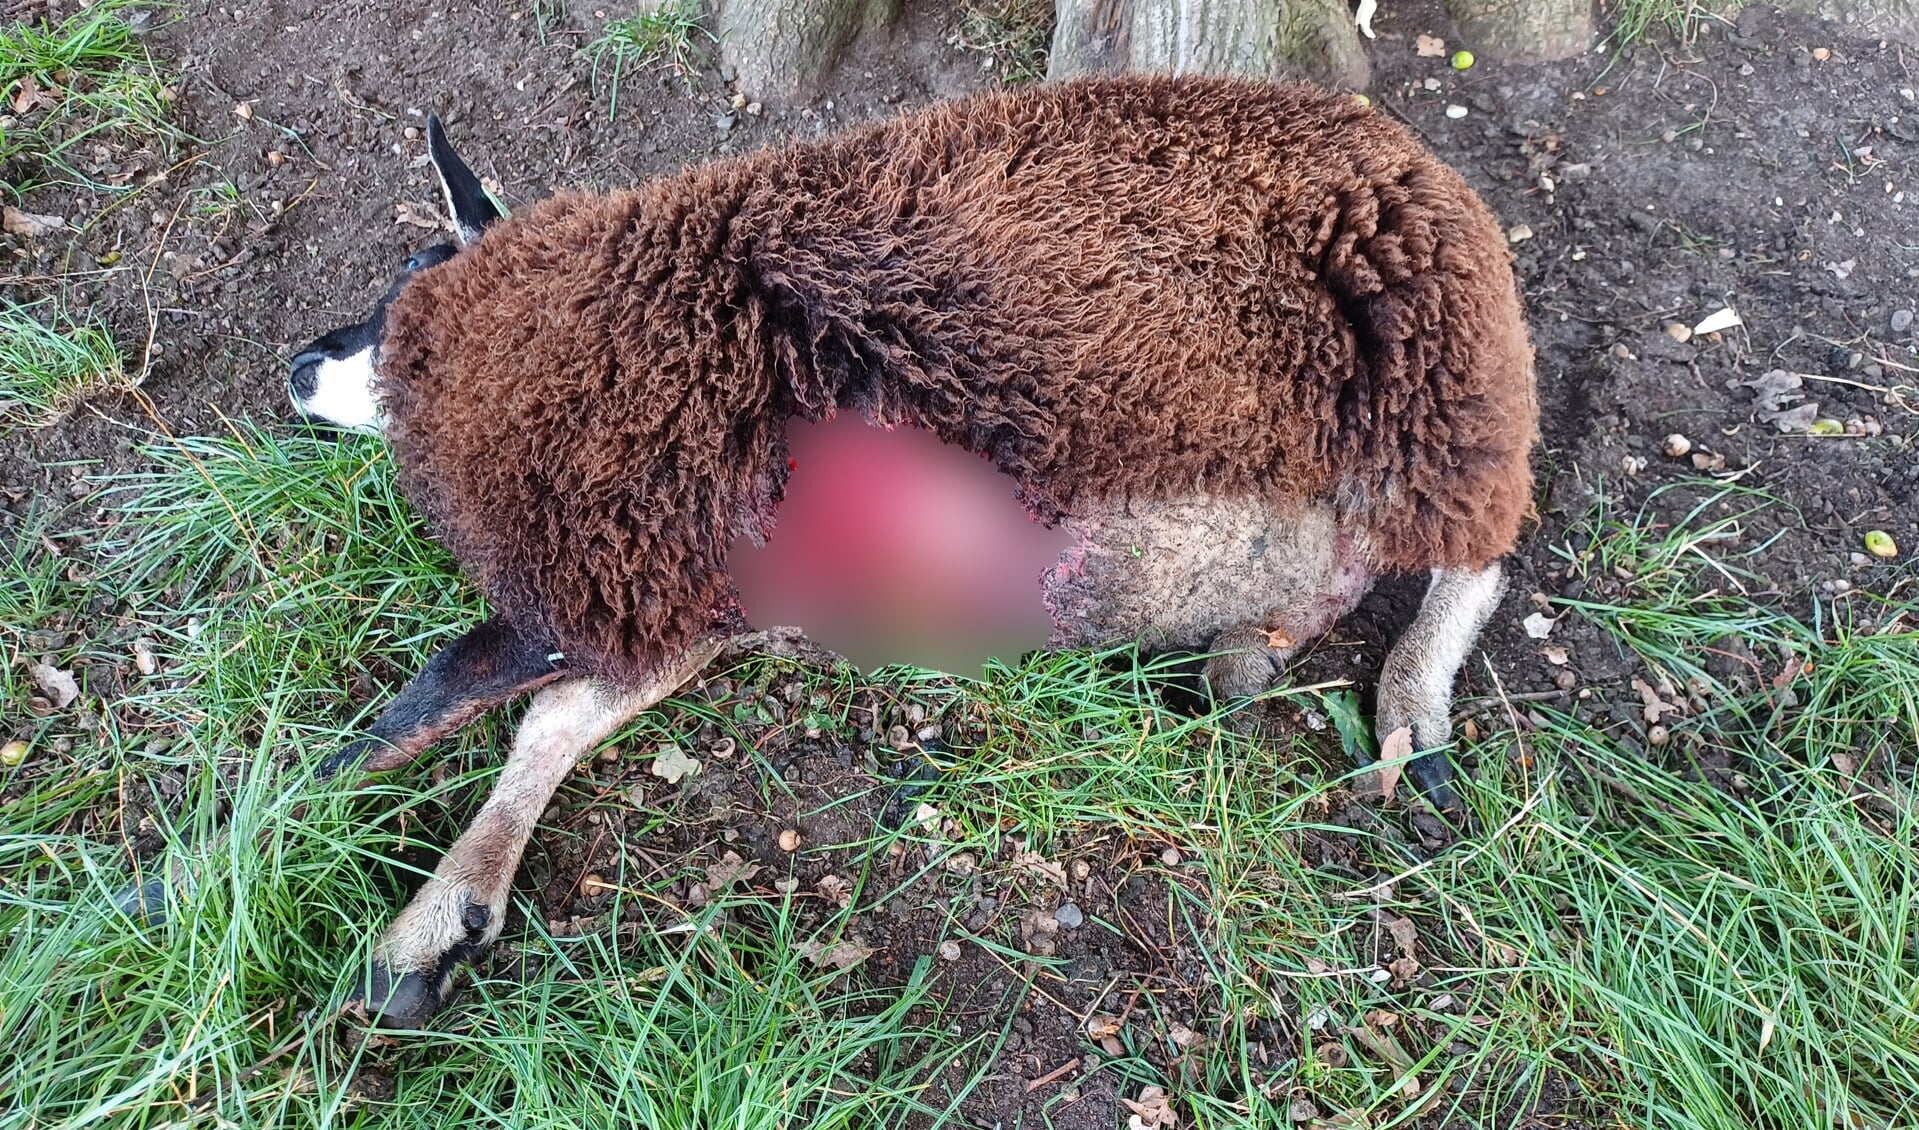 In Speuld zijn meerdere aanvallen geweest op schapen, waarbij zo’n twintig schapen slachtoffer werden.